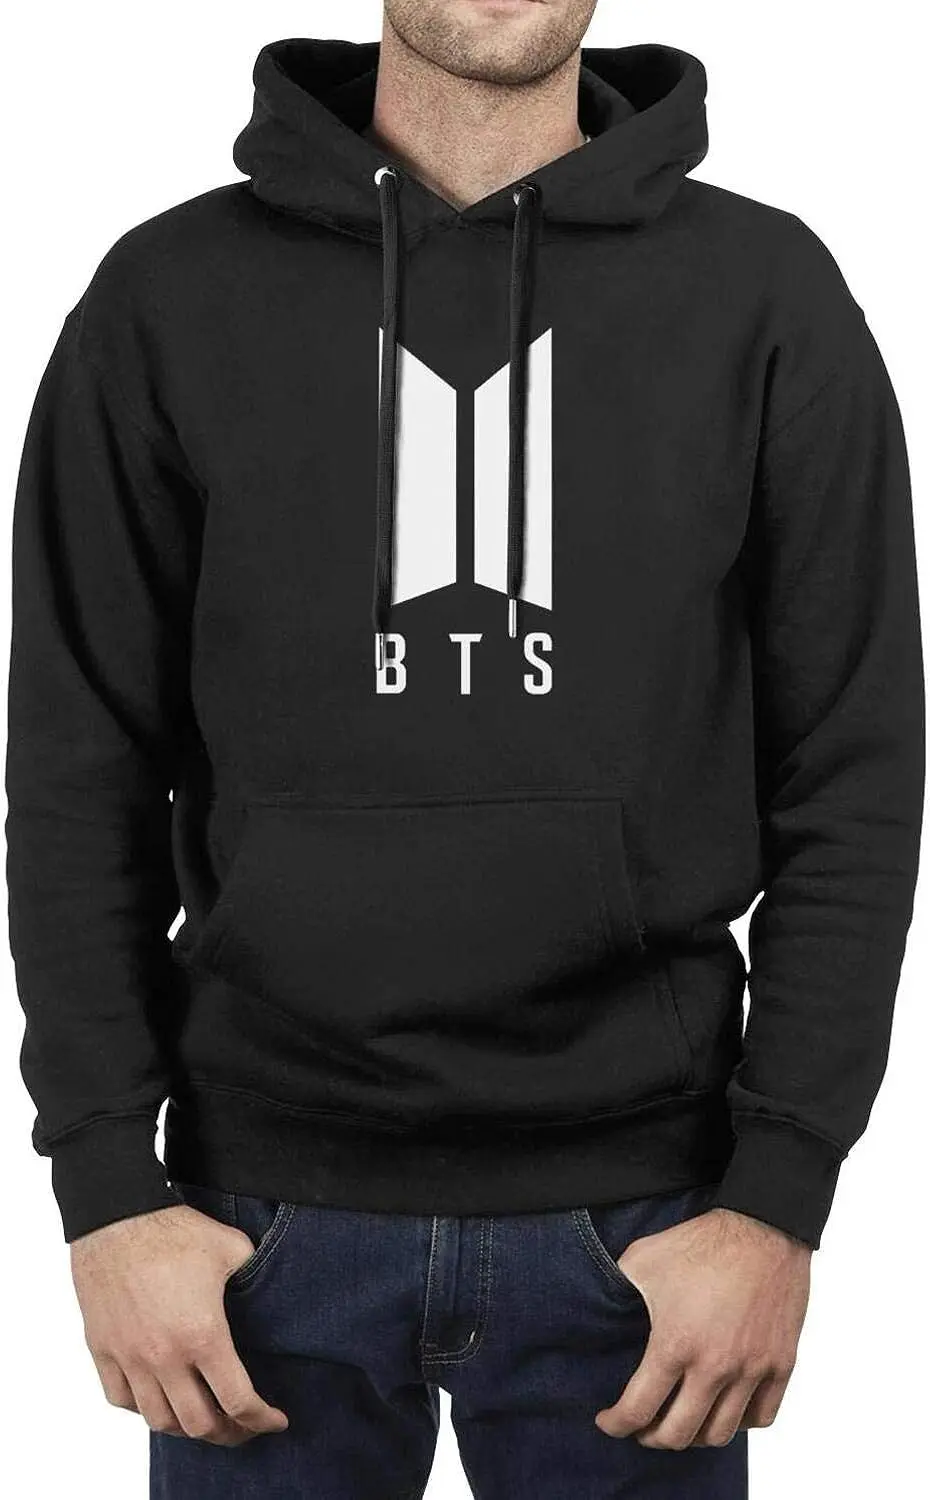 BTS Merch Shop Online, BTS Merchandise